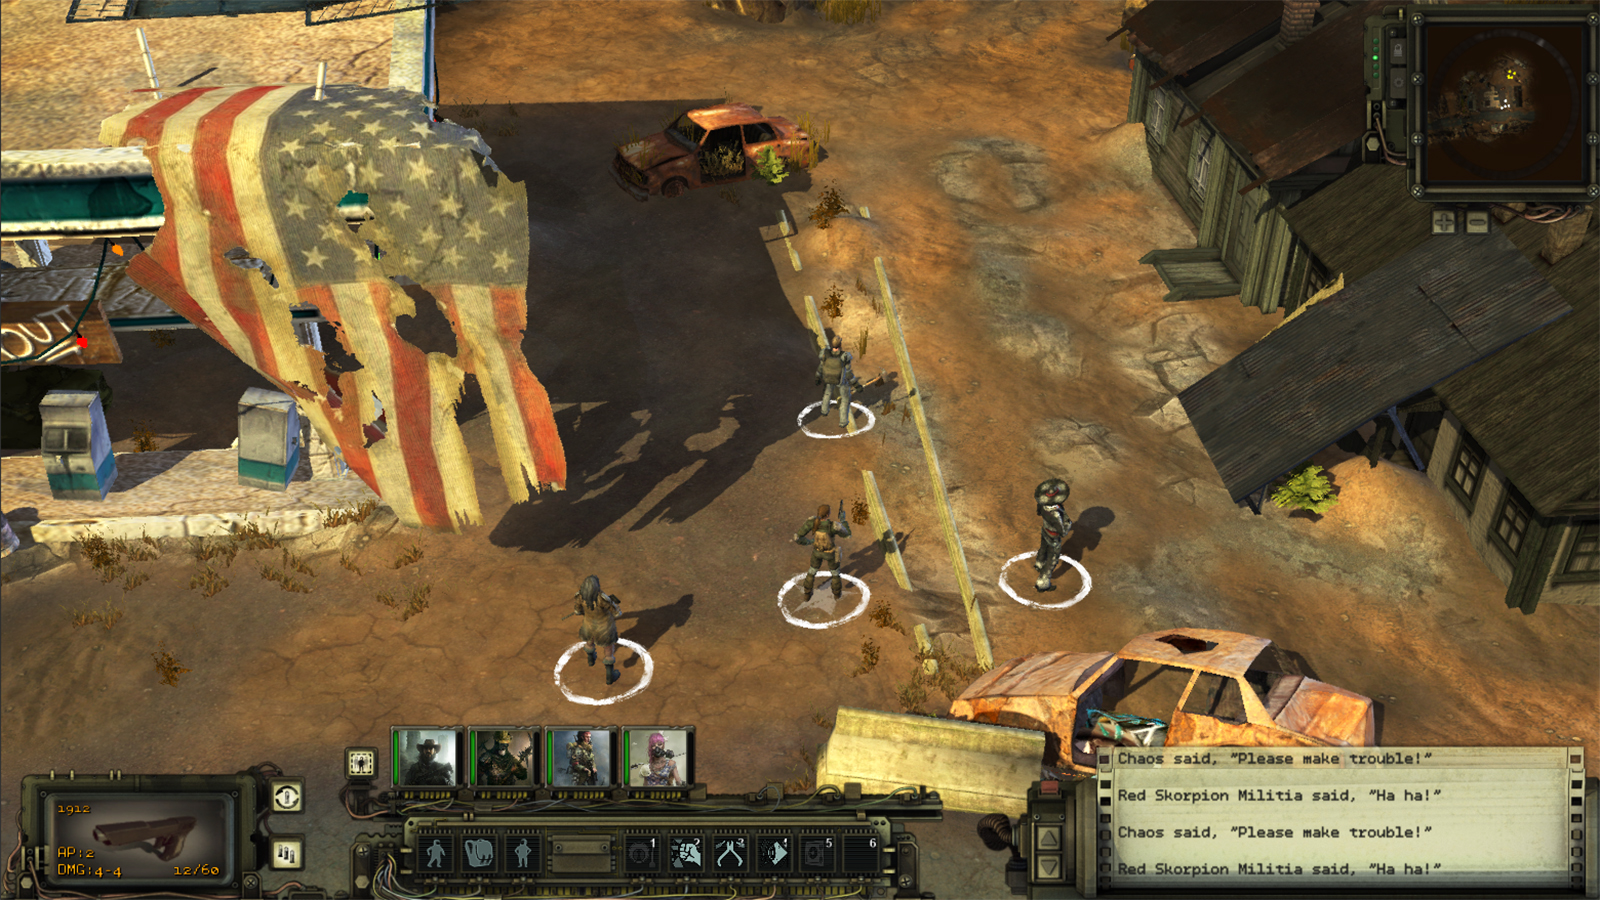 Darmowa kopia Falloutopodobnego role playa Wasteland 2 do zgarnicia z GOG